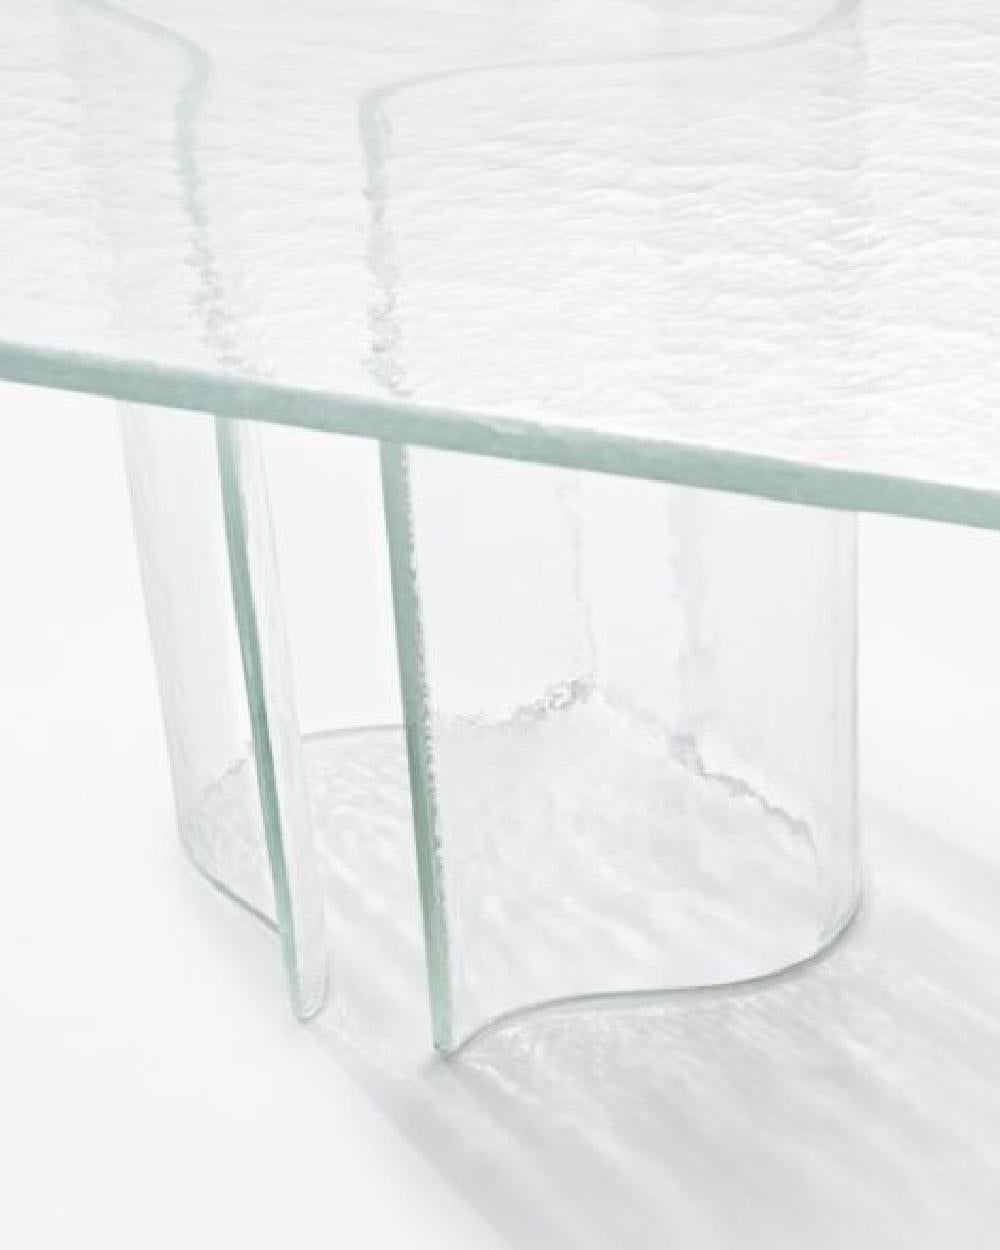 Melt est une collaboration avec le studio de design japonais Nendo, inspirée par la flexibilité du verre en fusion et la force de gravité. La création de Melt a été une production unique et complexe. Après avoir observé les artisans travaillant dans